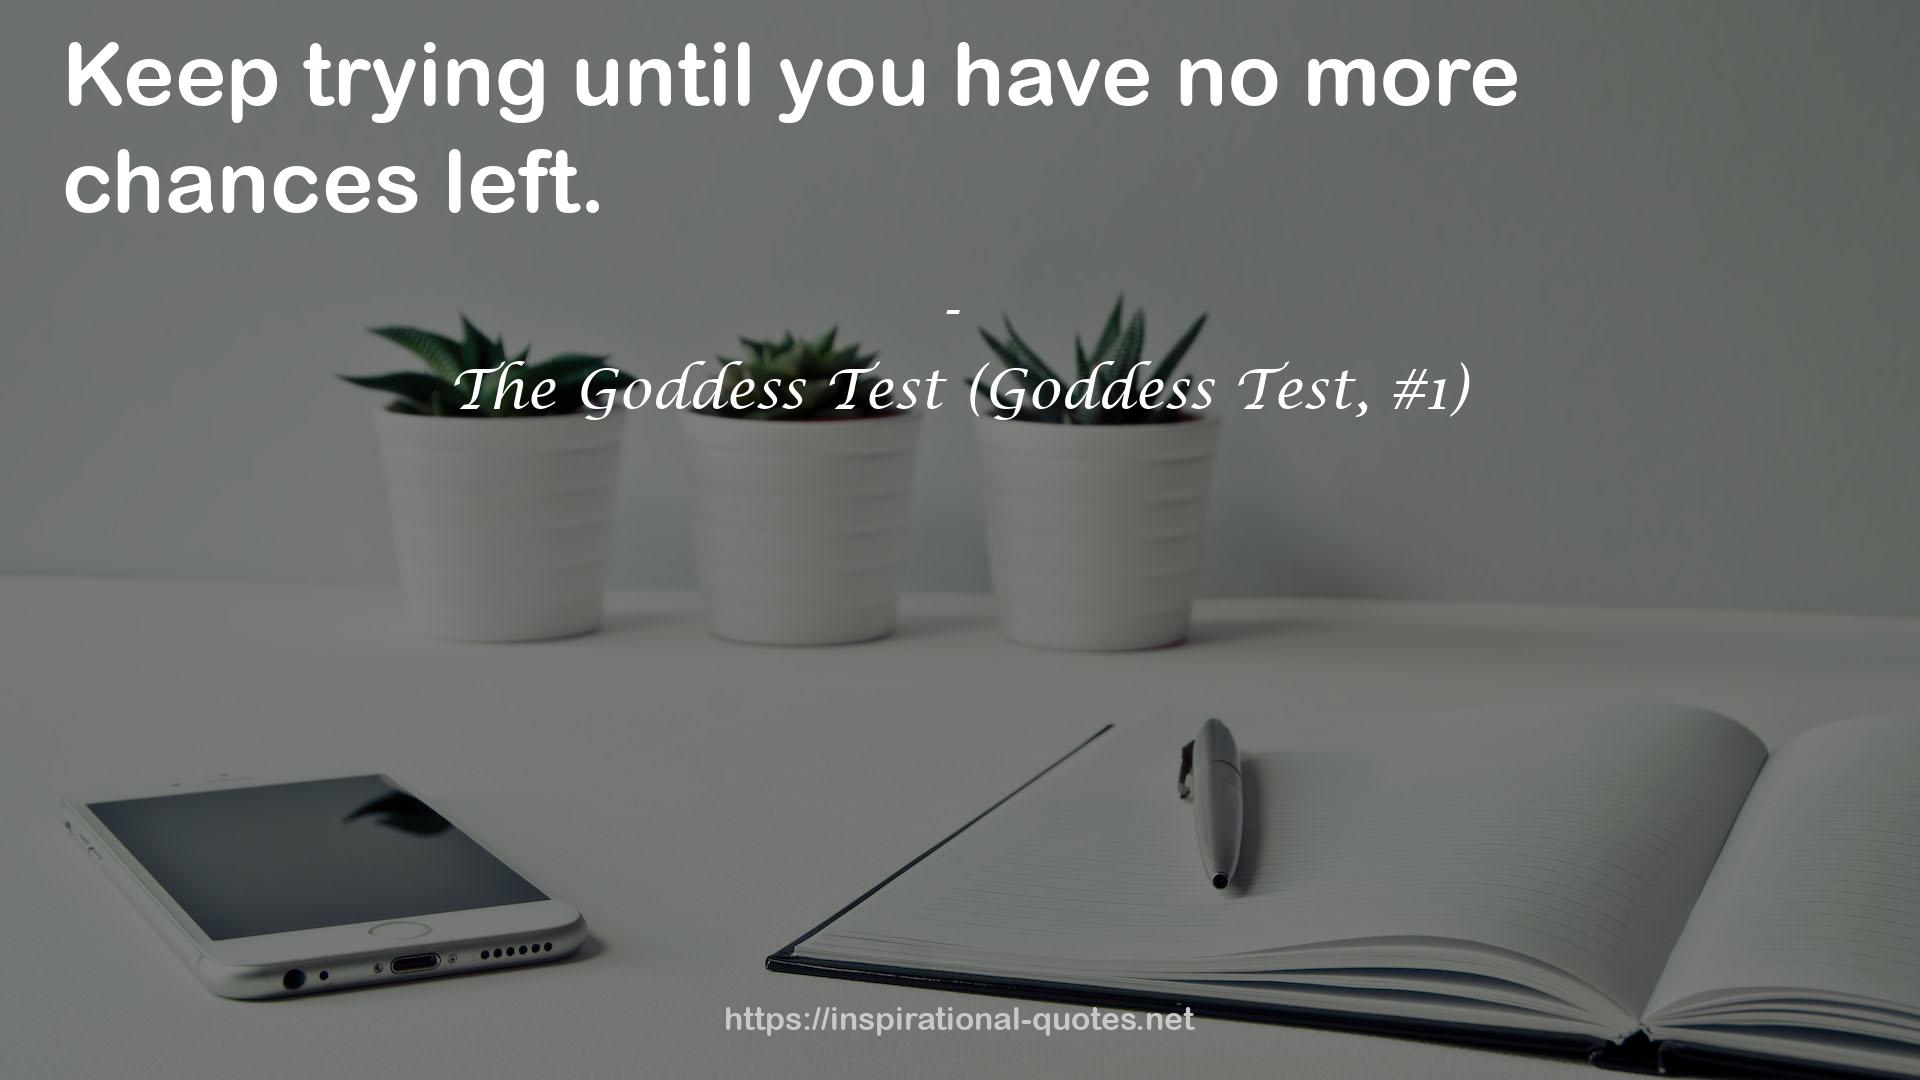 The Goddess Test (Goddess Test, #1) QUOTES